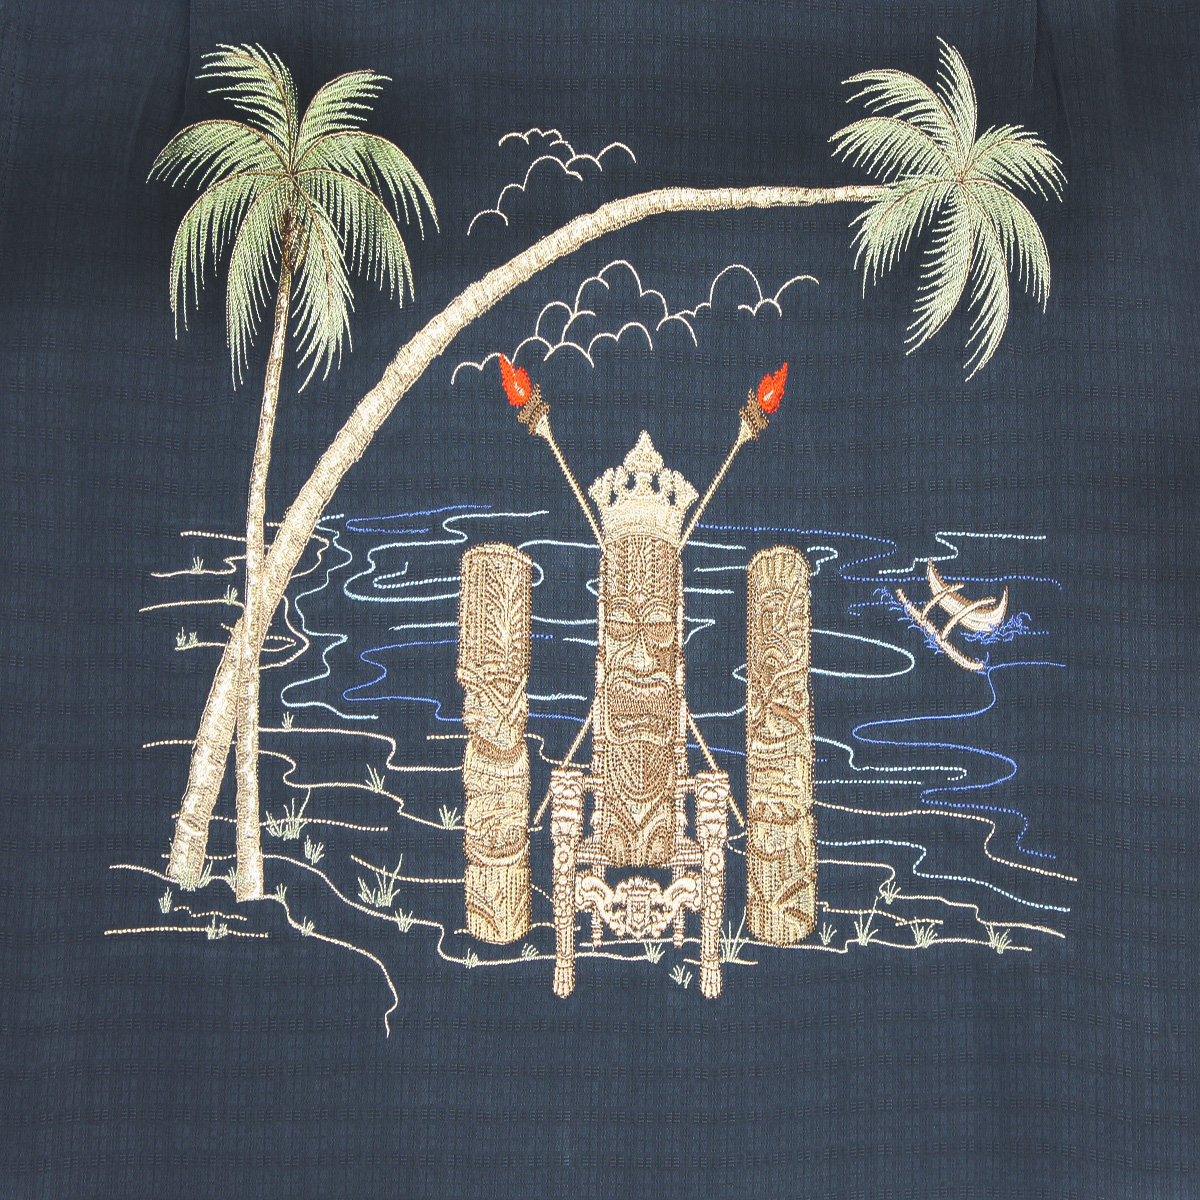 Bamboo Cay-Tiking-Navy-Back of shirt